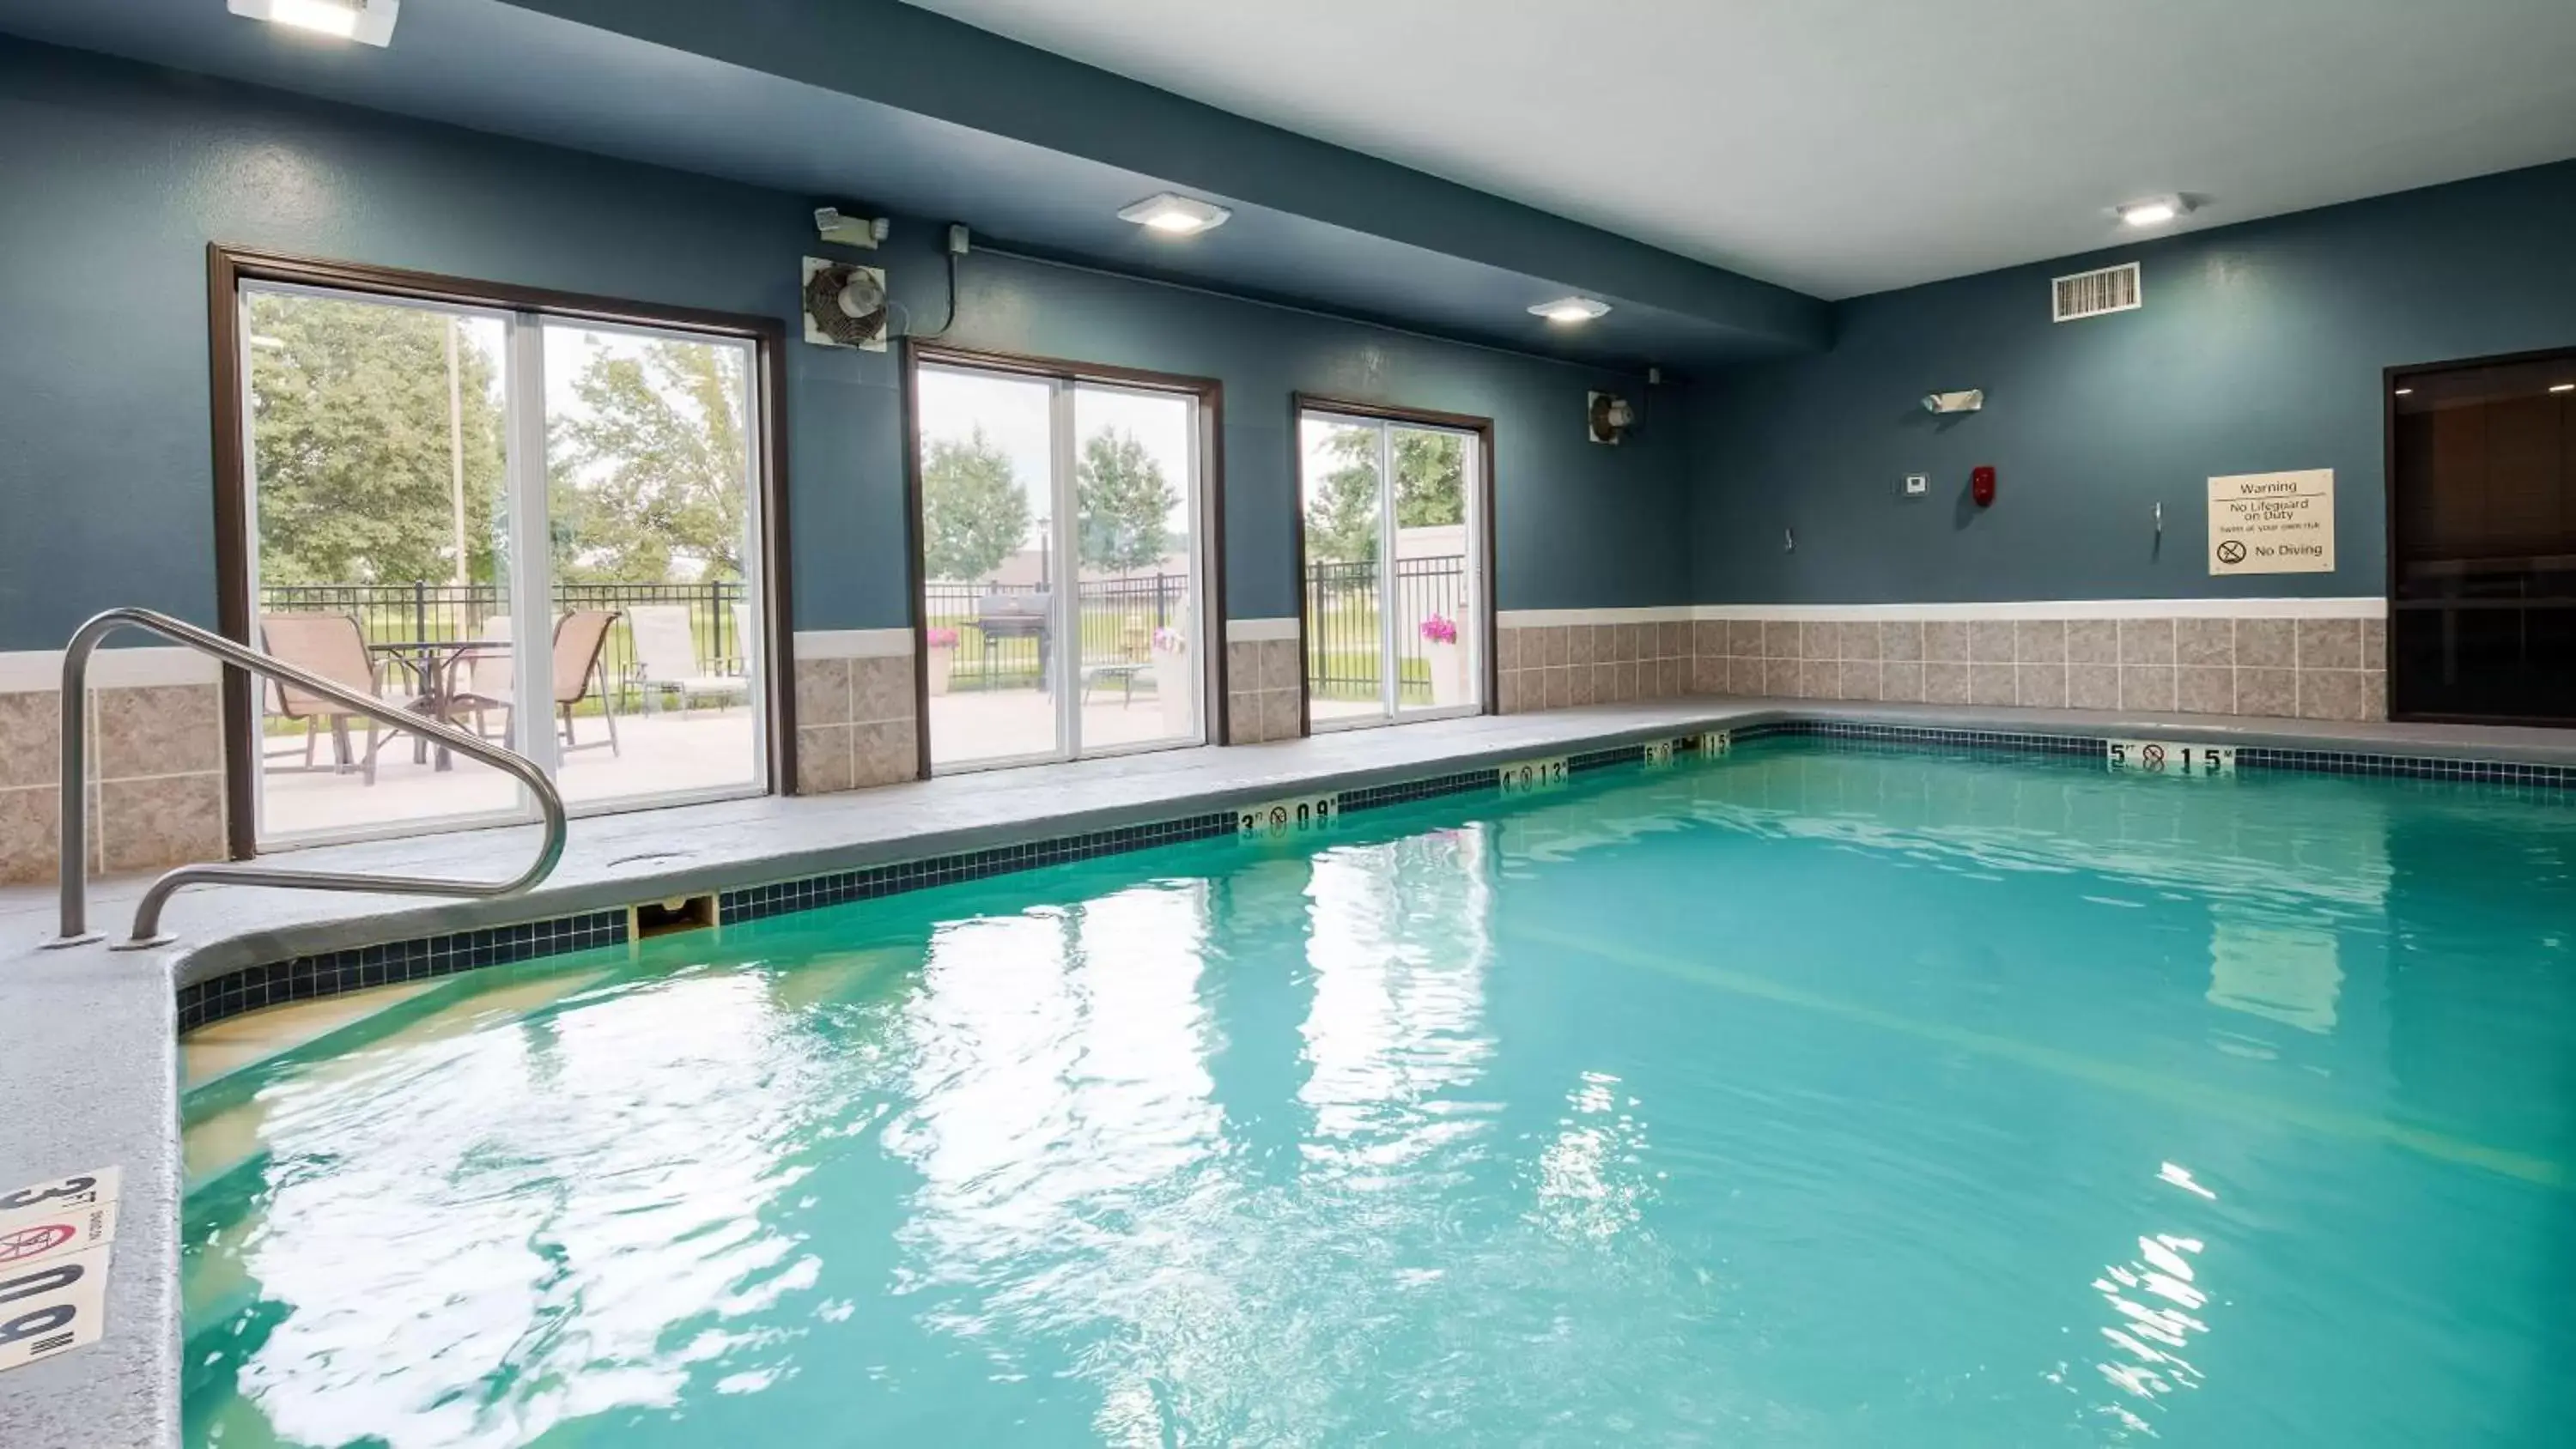 On site, Swimming Pool in Best Western Plus Lee's Summit Hotel & Suites